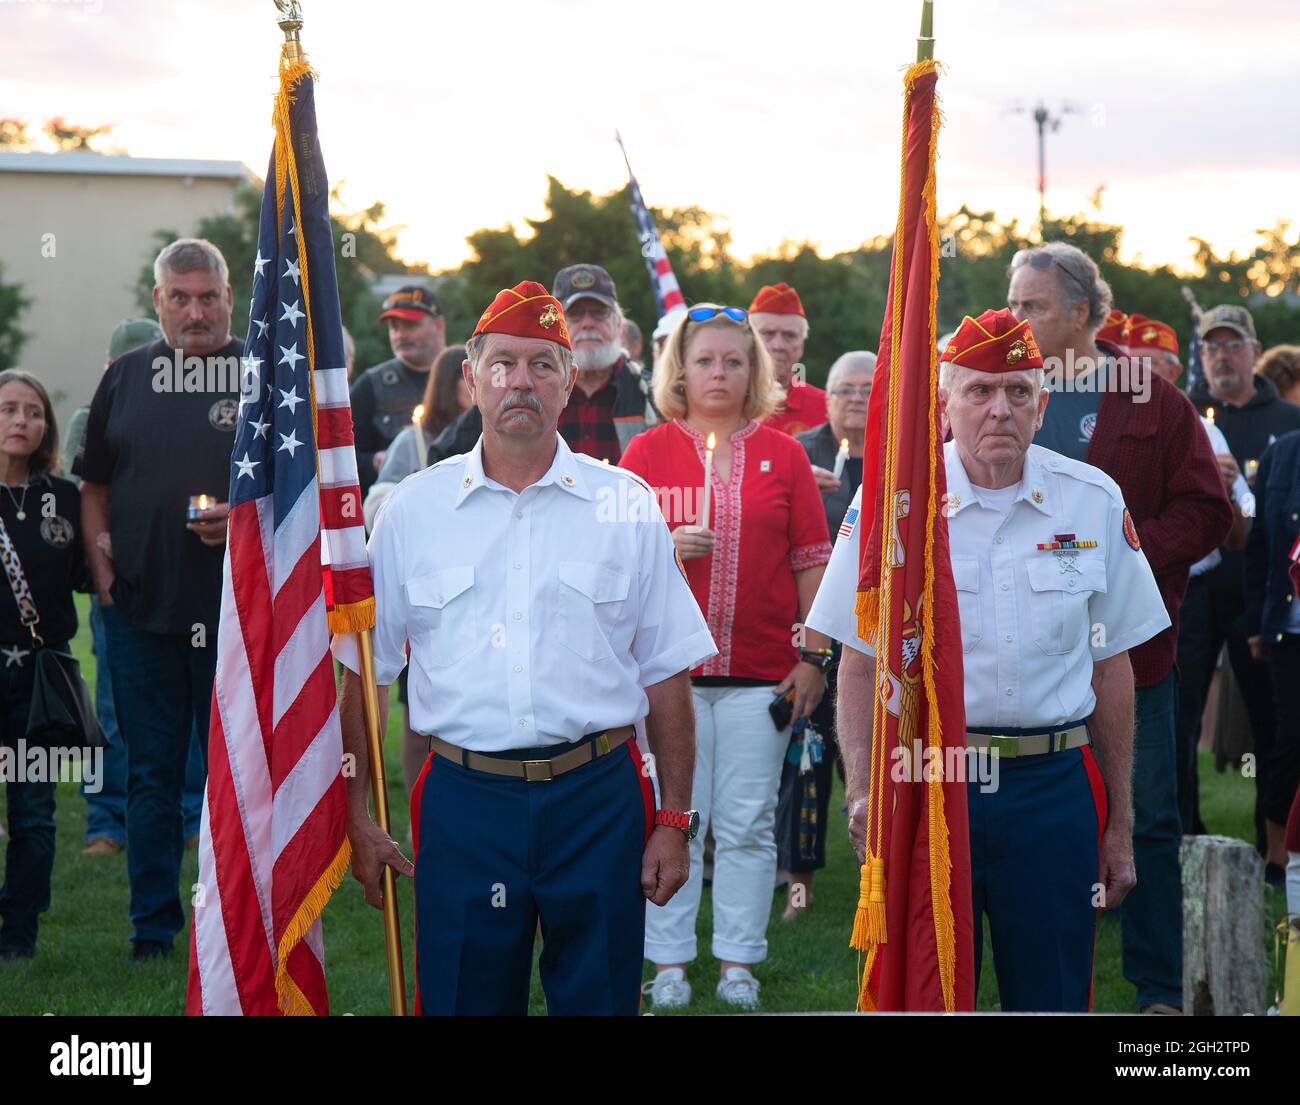 Una guardia d'onore in una veglia a lume di candela dei Veterani a Hyannis, Massachusetts (USA) per i membri caduti del servizio in Afghanistan. Foto Stock